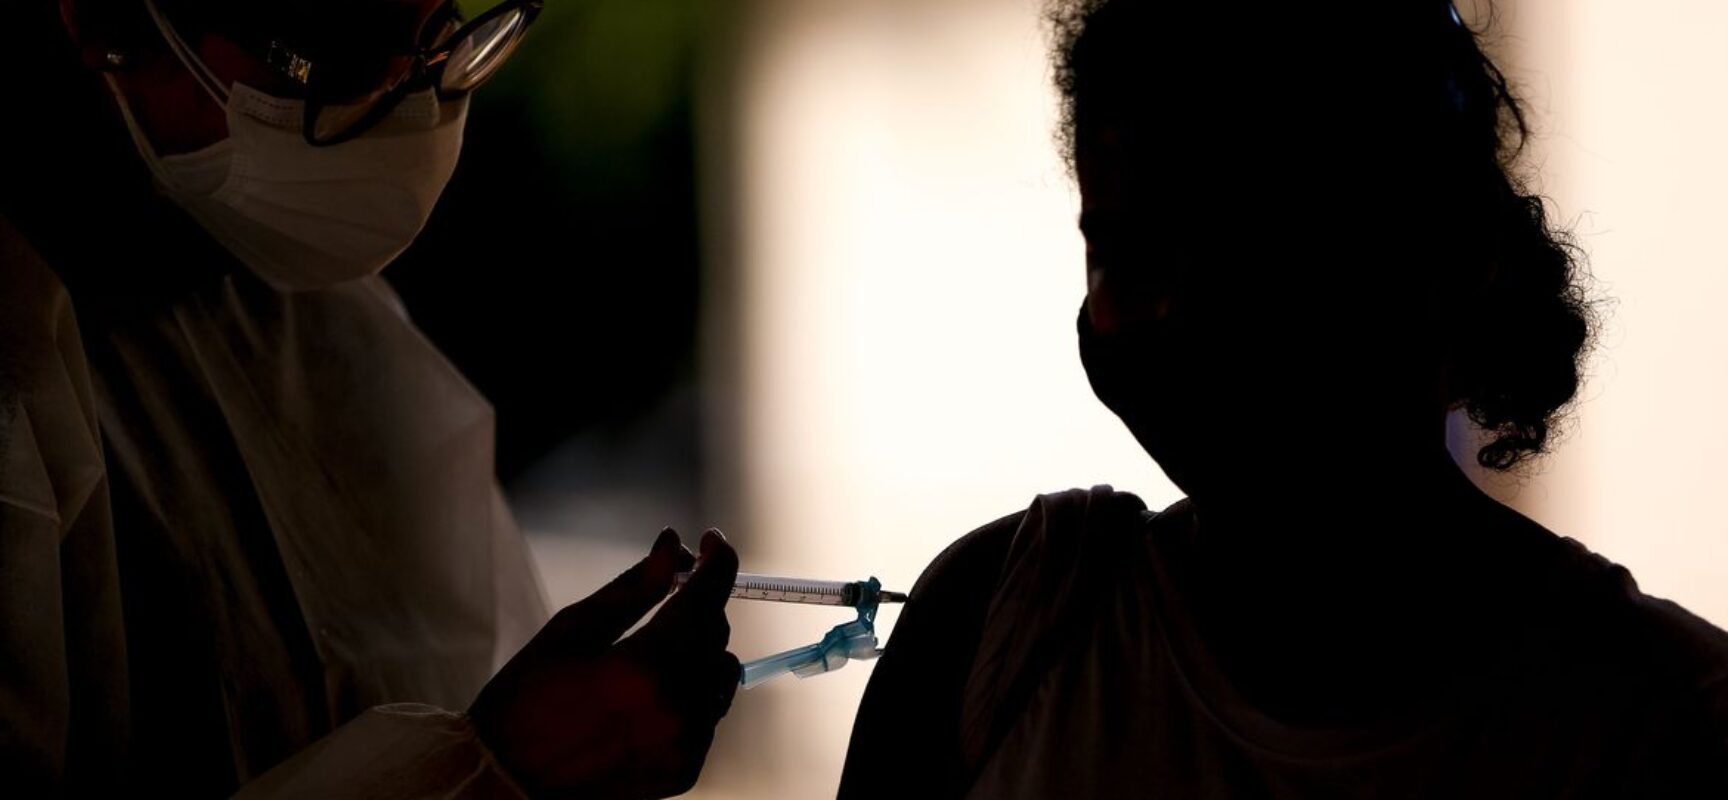 Covid-19: Brasil tem mais de 200 milhões de doses de vacinas aplicadas